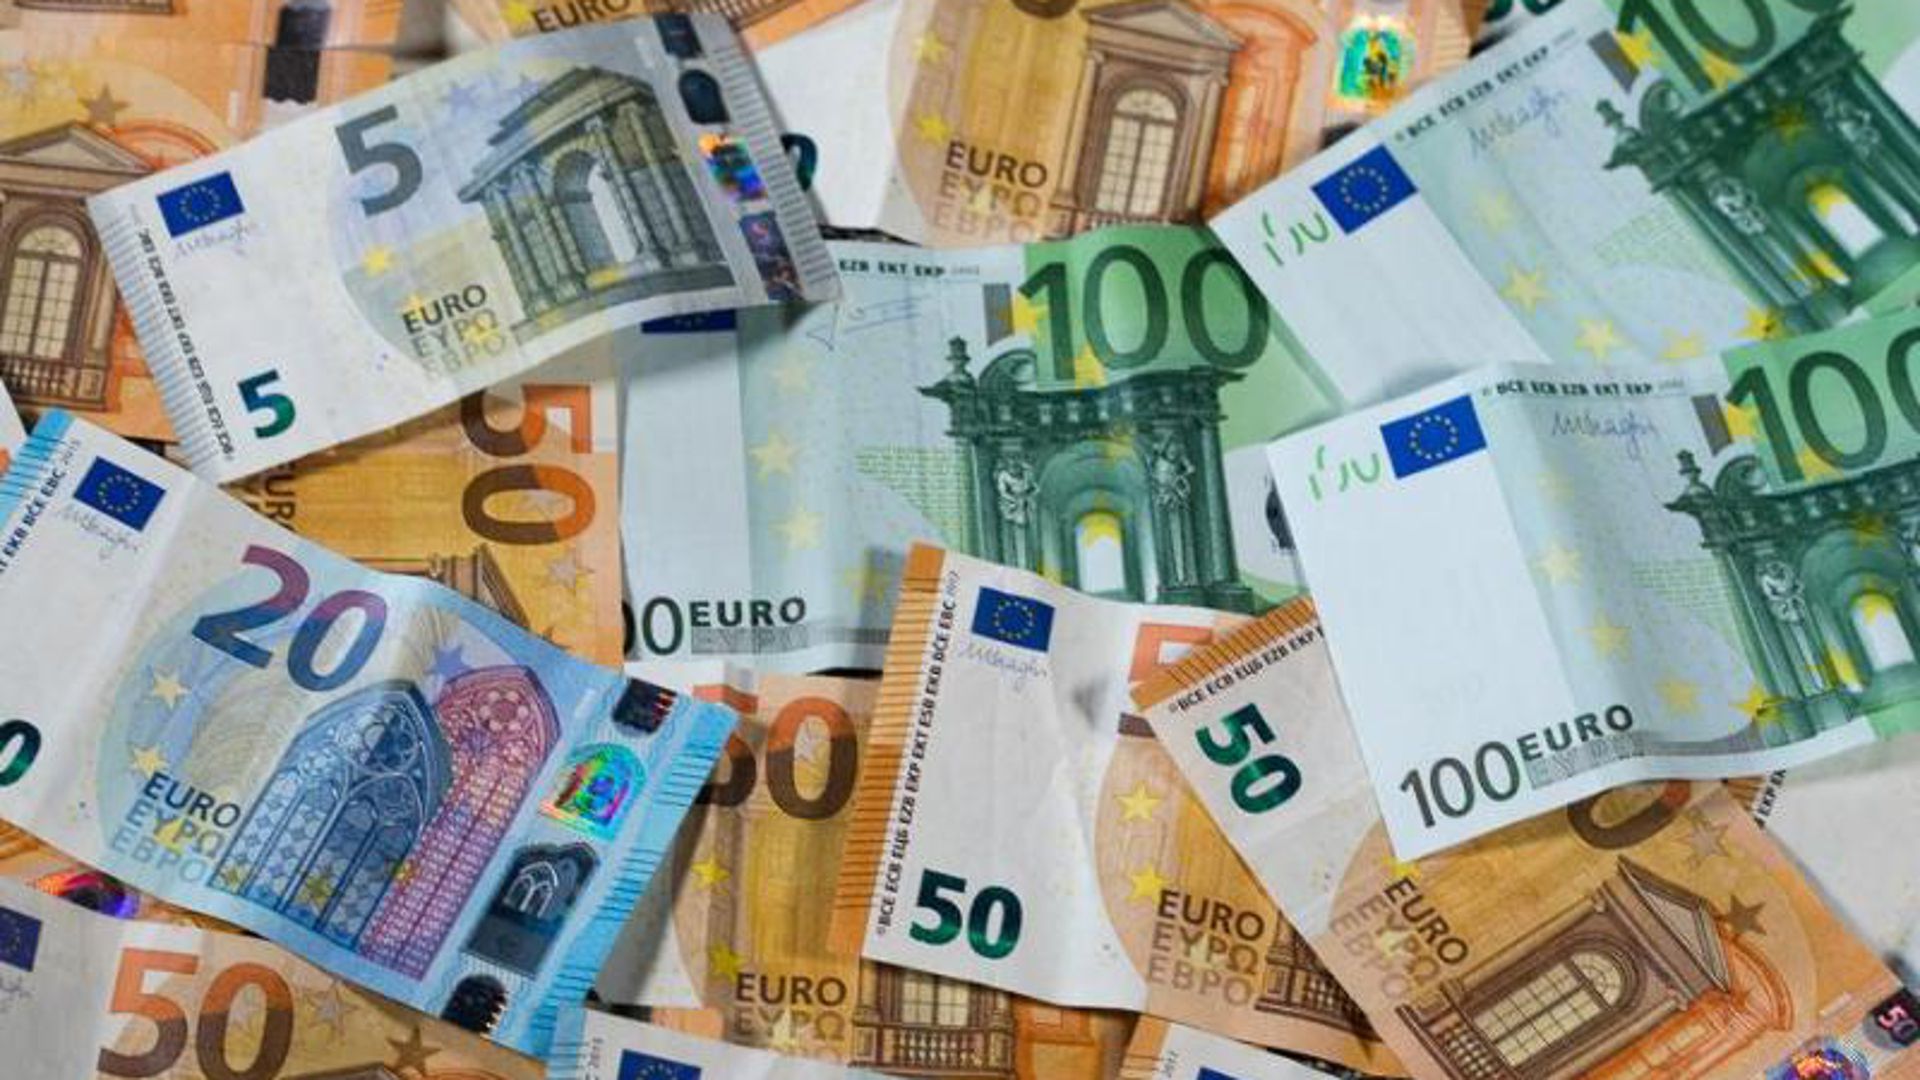 Verschiedene Euro-Geldscheine liegen auf einem Haufen